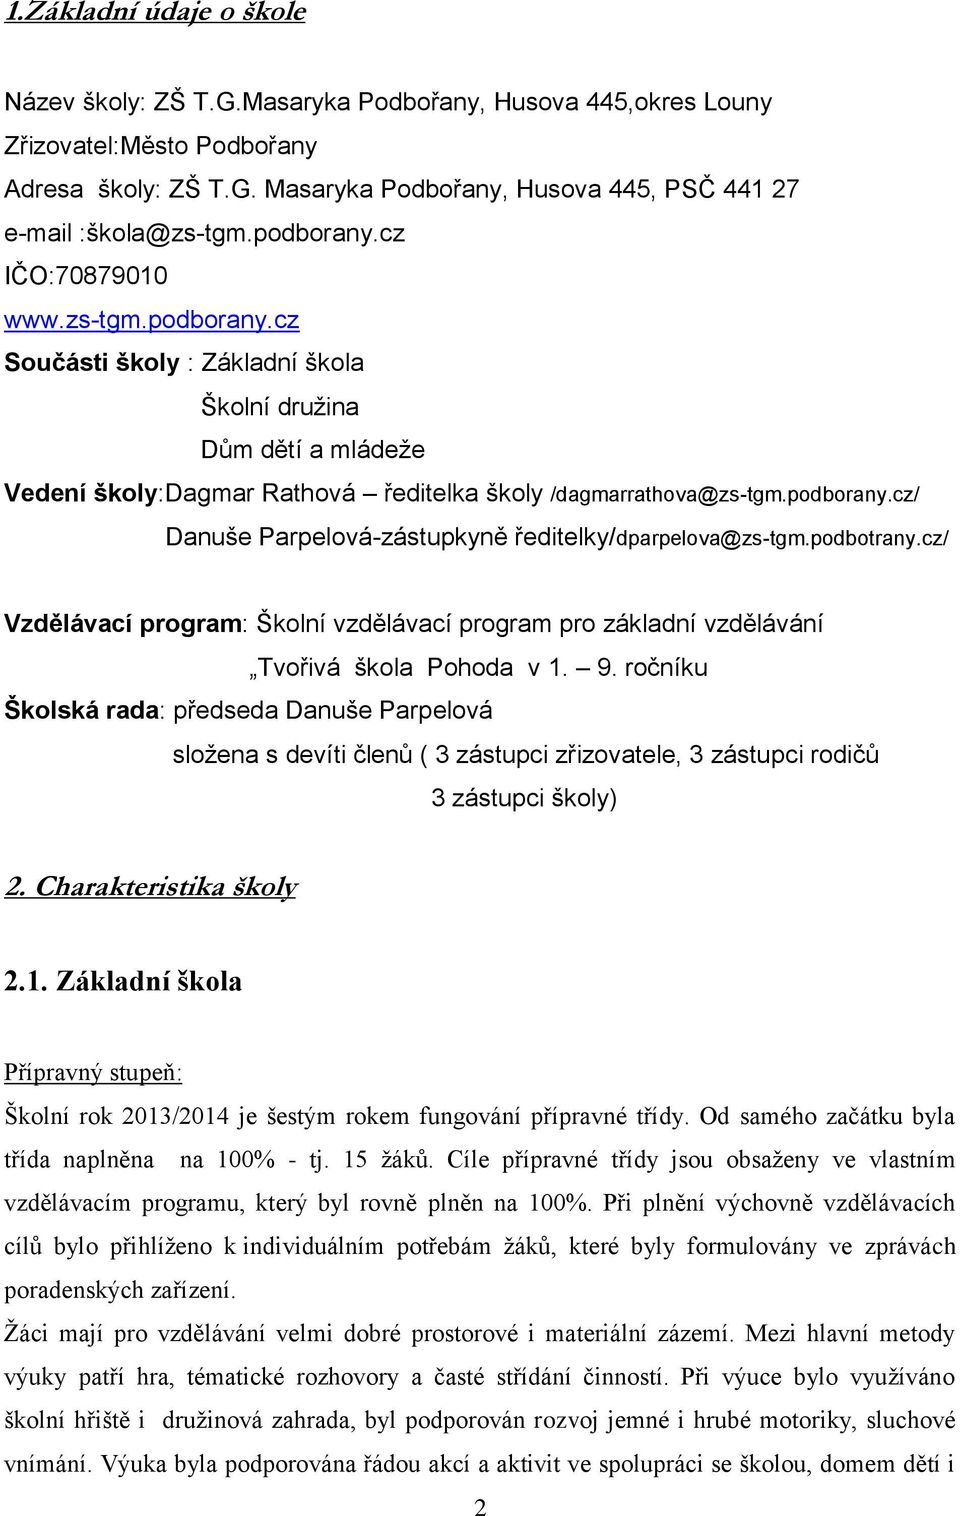 podbotrany.cz/ Vzdělávací program: Školní vzdělávací program pro základní vzdělávání Tvořivá škola Pohoda v 1. 9.